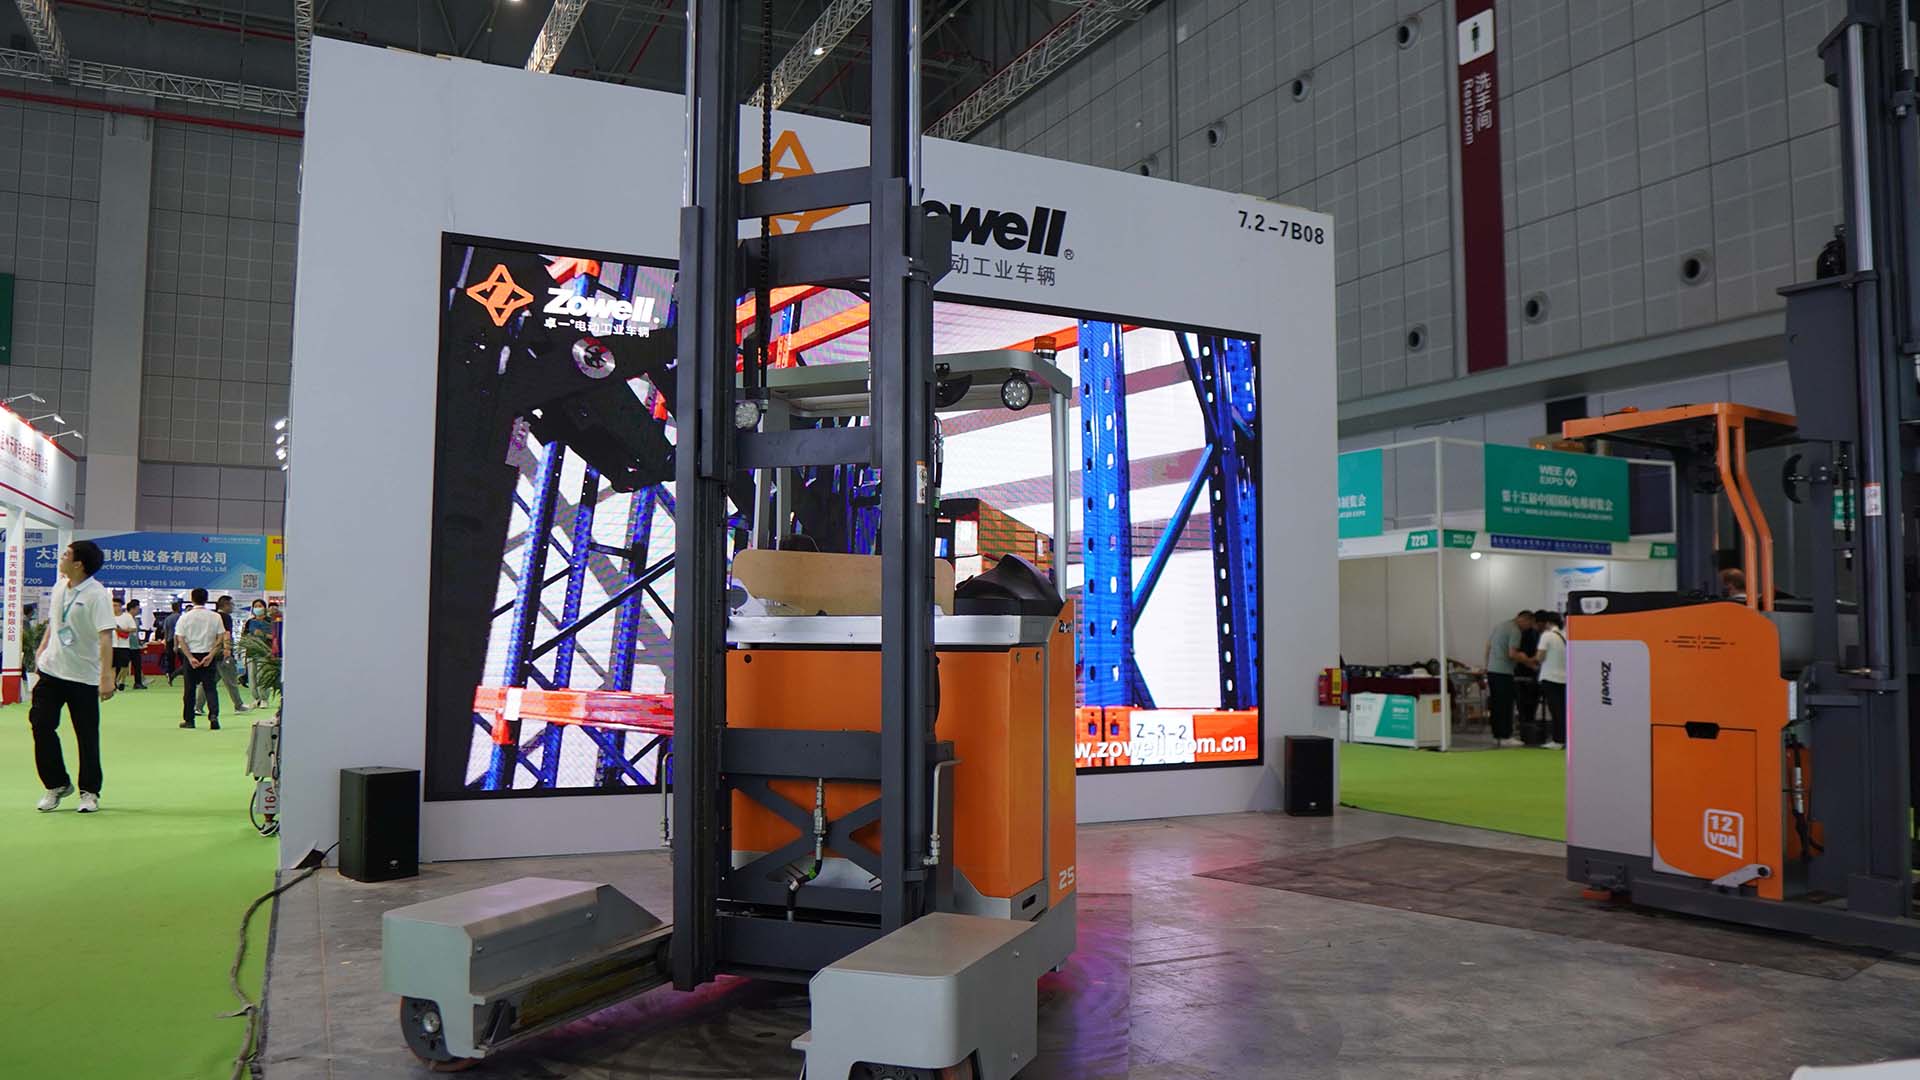 Đánh giá triển lãm thang máy quốc tế | Tuyệt vời không kết thúc, nhìn lại phong cách Zowell!